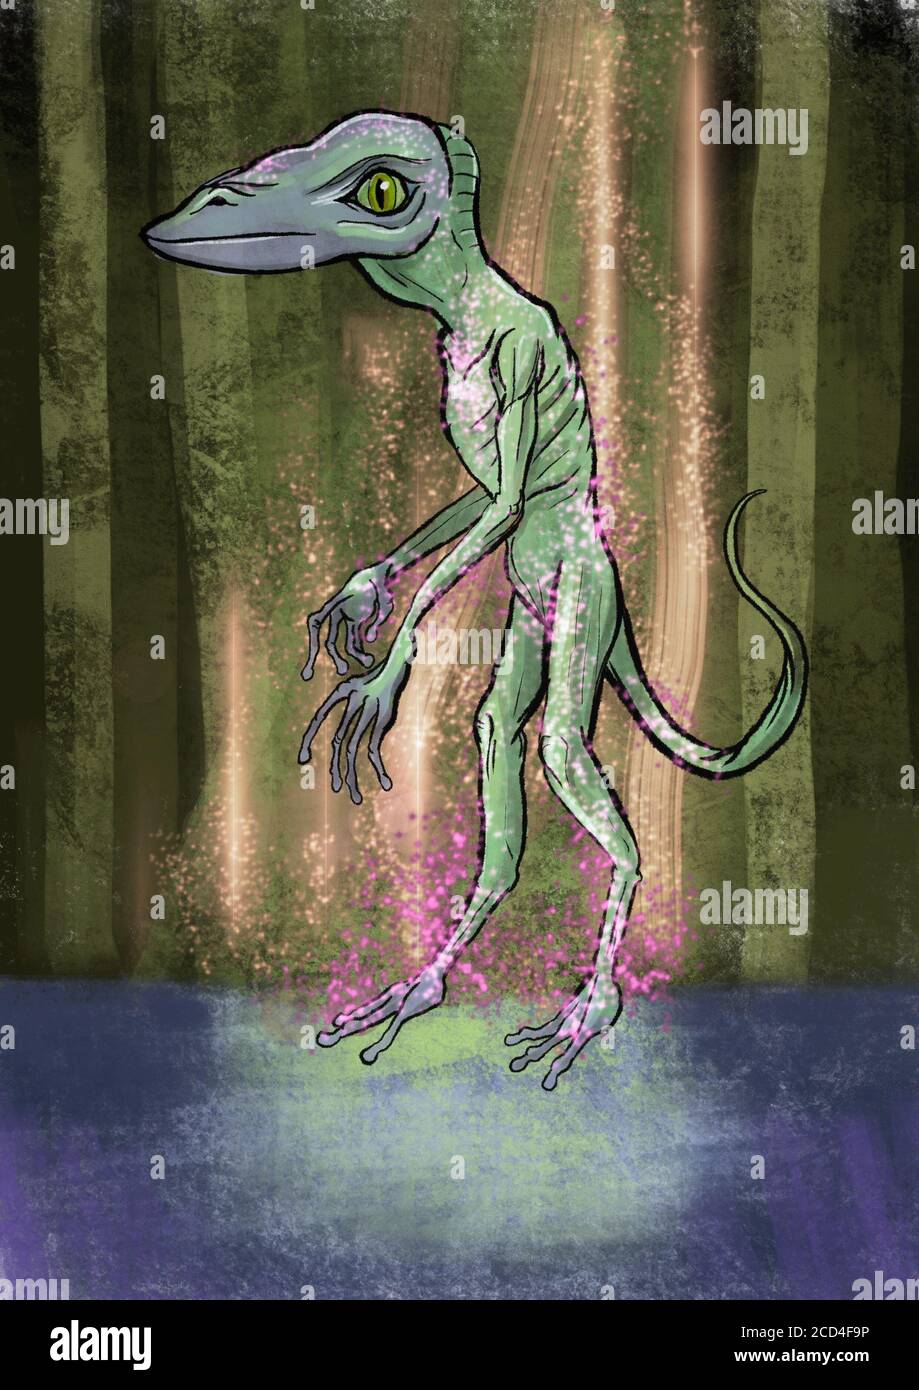 Ilustración de un alienígena reptiliano Foto de stock